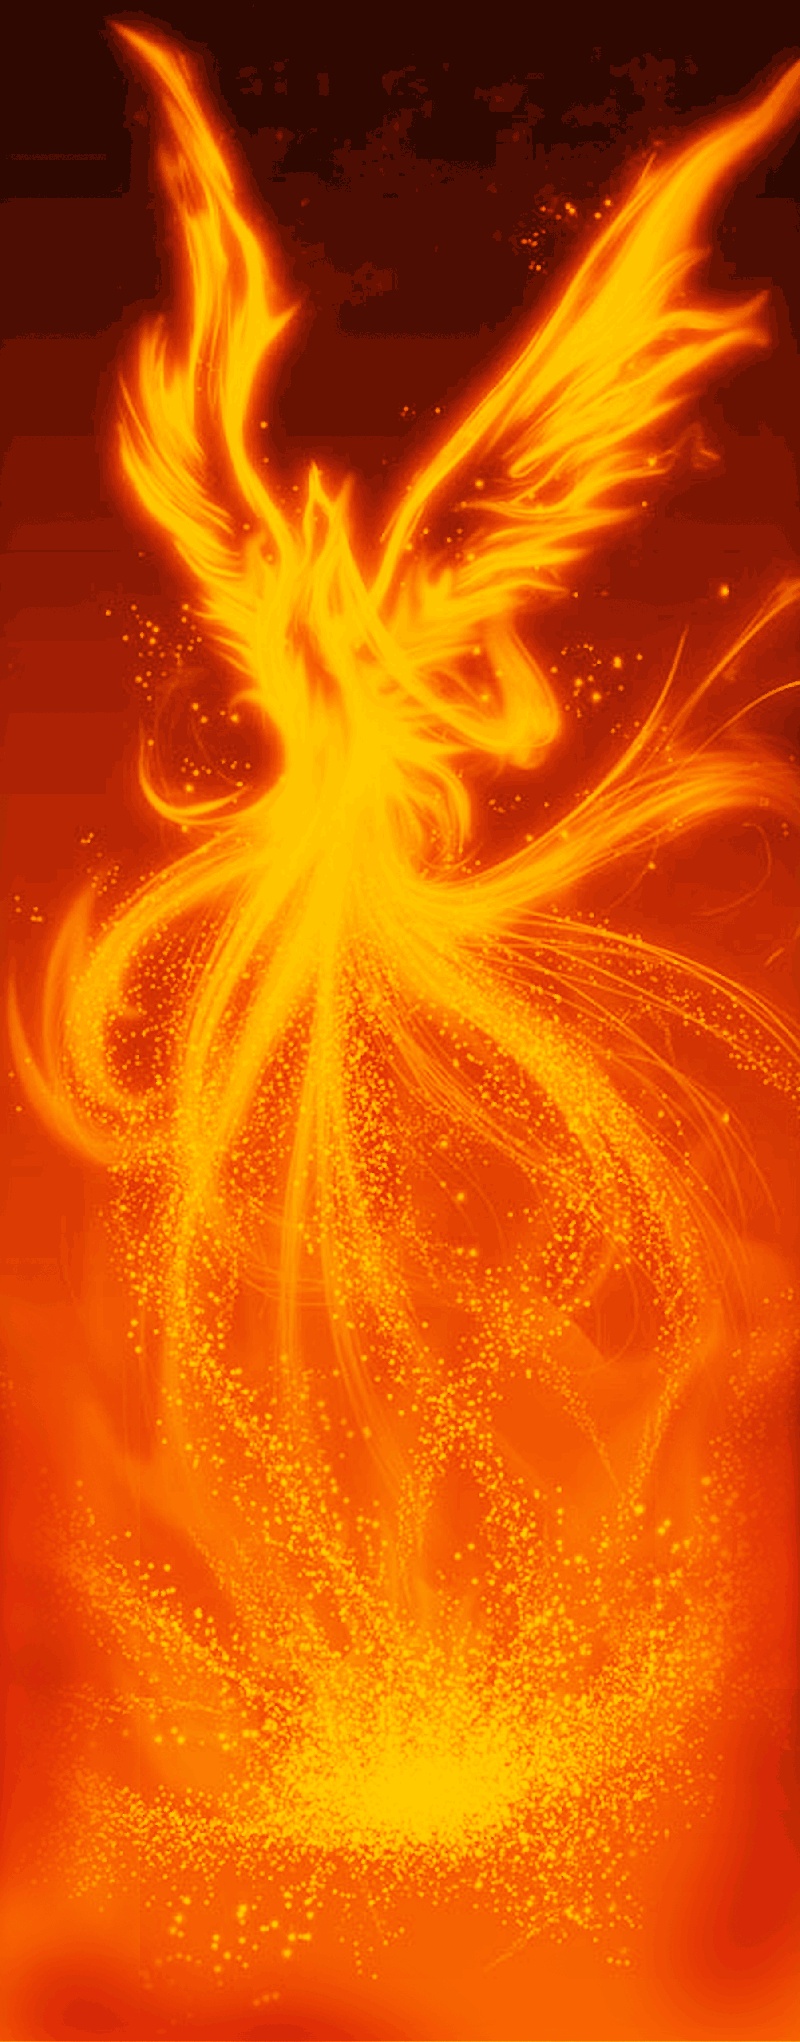 凤凰 中国风 手绘 动感 火焰 设计元素 燃烧 神兽 效果元素 朱雀 浴火